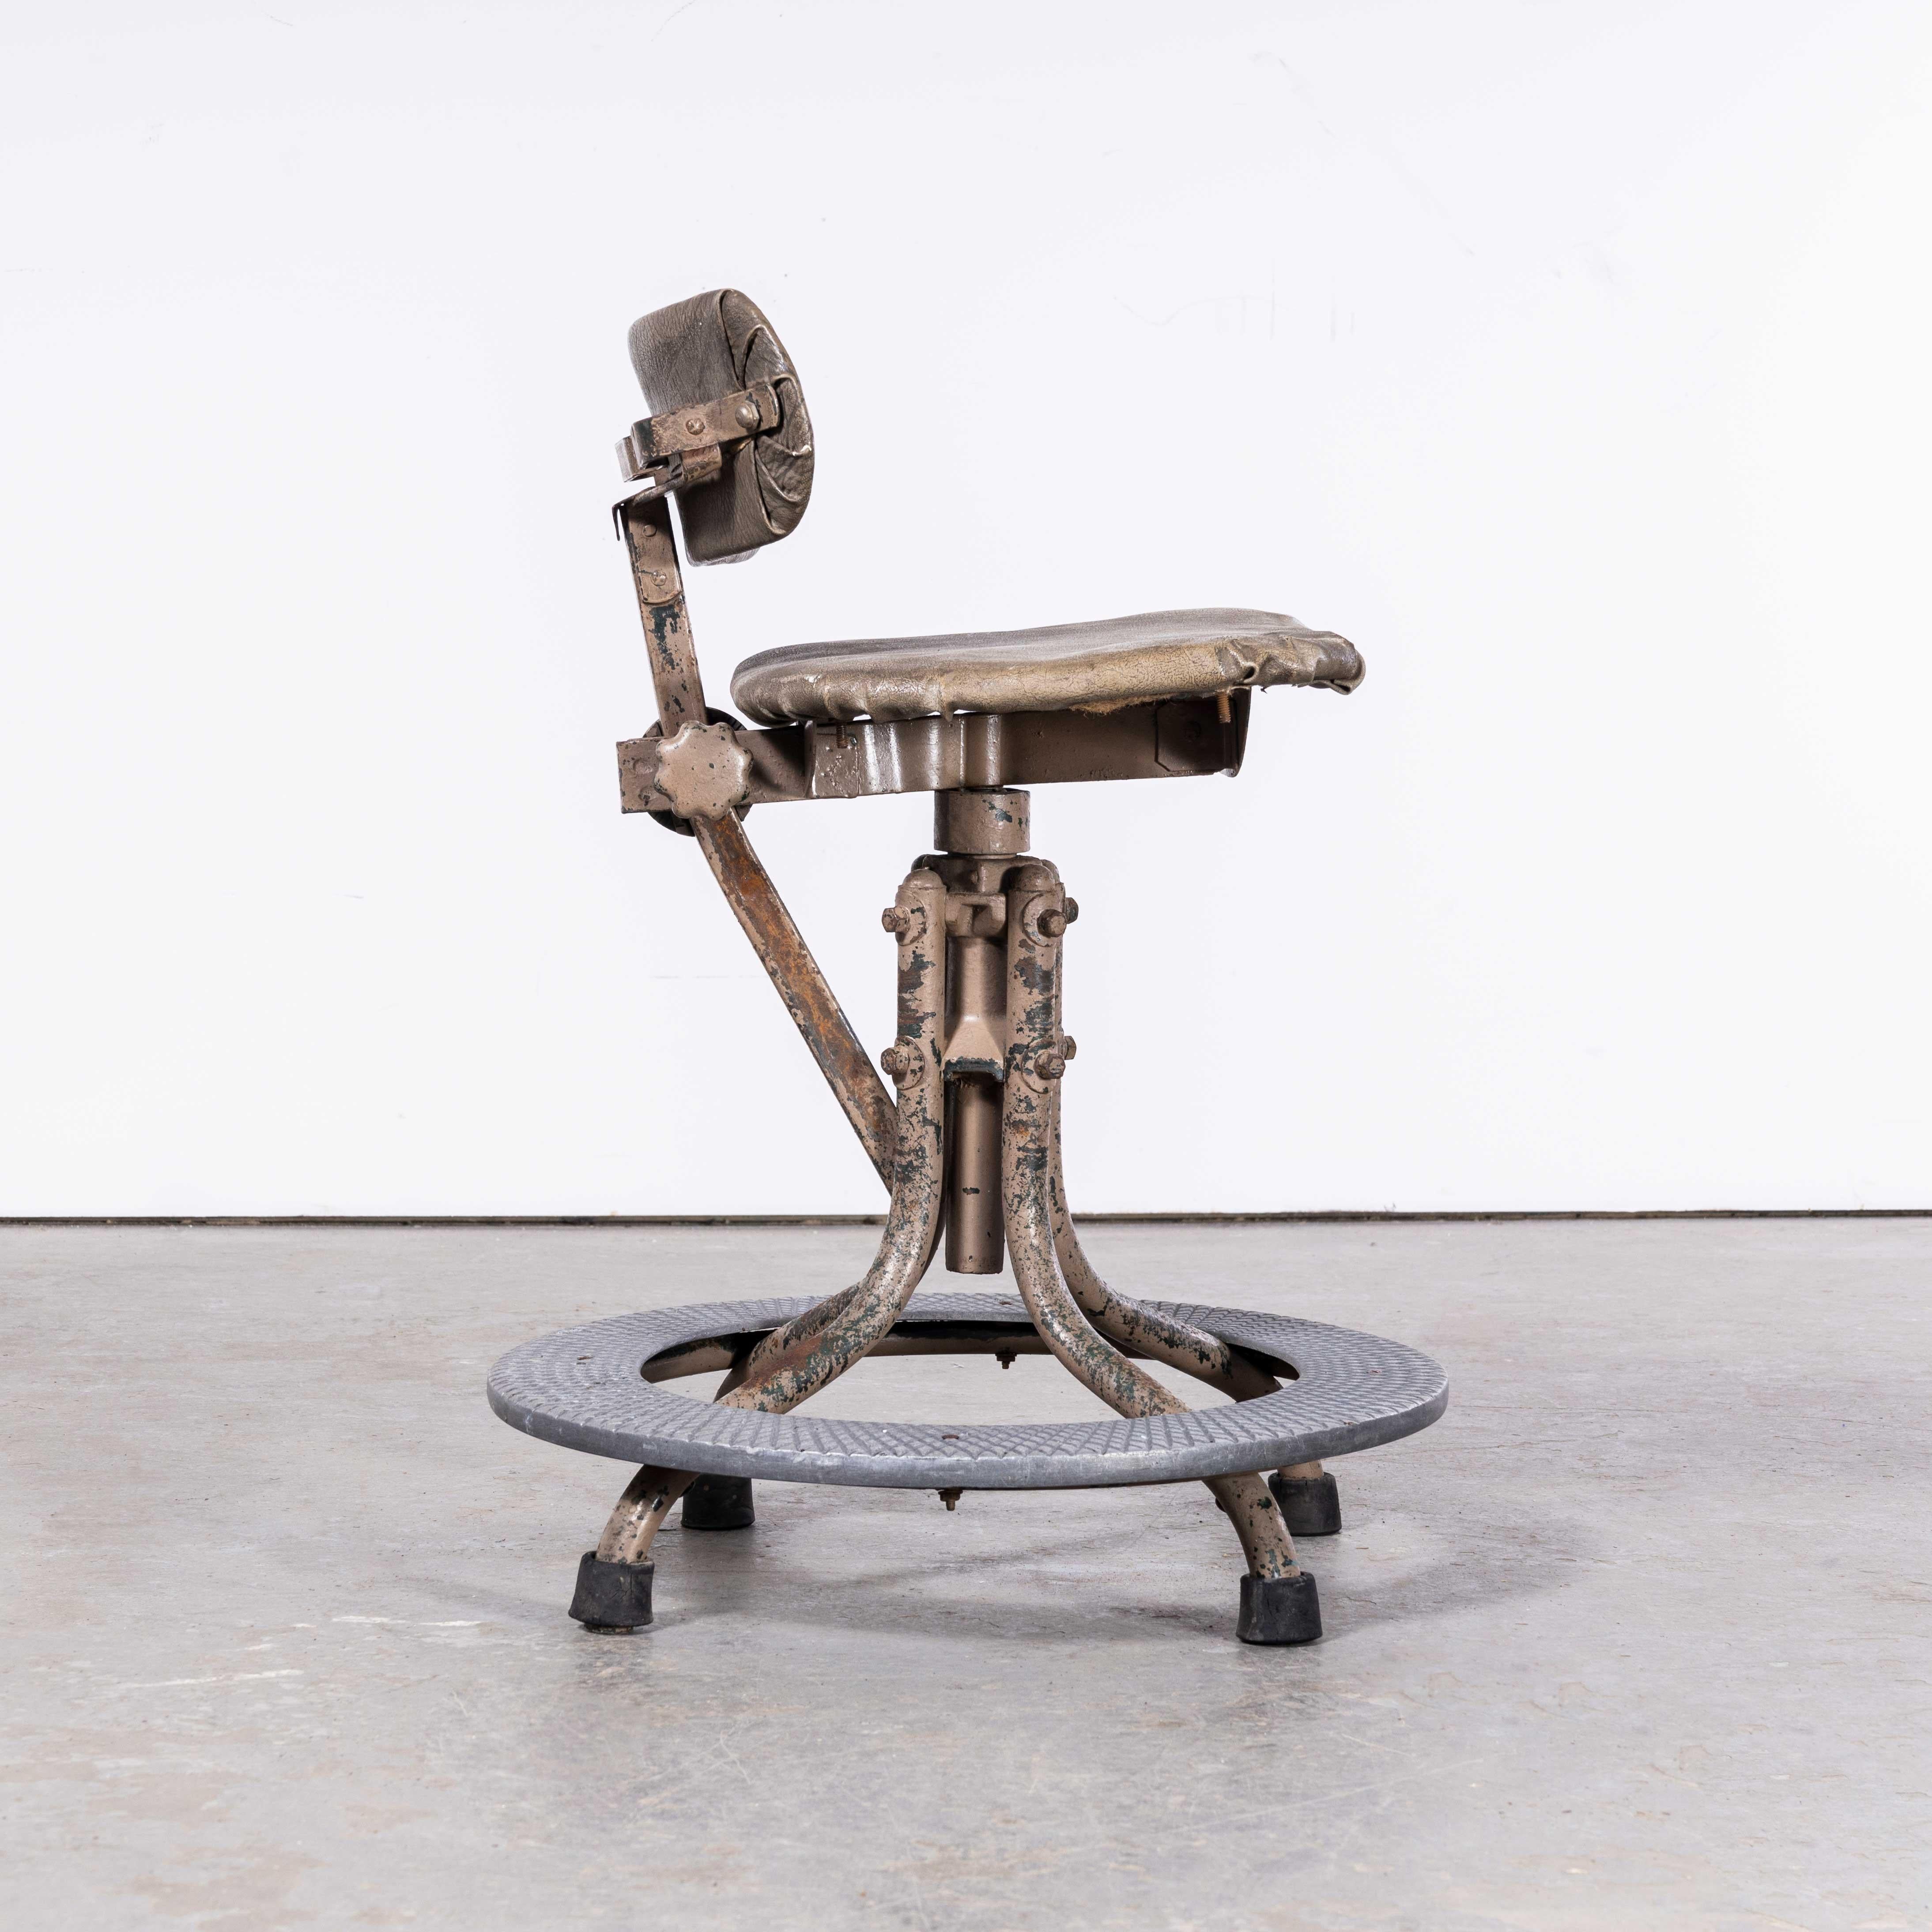 1950's Evertaut Original Machinists Stuhl - mit Fußstütze (2518)
1950's Evertaut Original Machinists Chair - mit Fußstütze. In seiner Blütezeit war Evertaut der britische Konkurrent von Tolix, Multipl's und Fibrocit. Dieser Stuhl ist einer ihrer